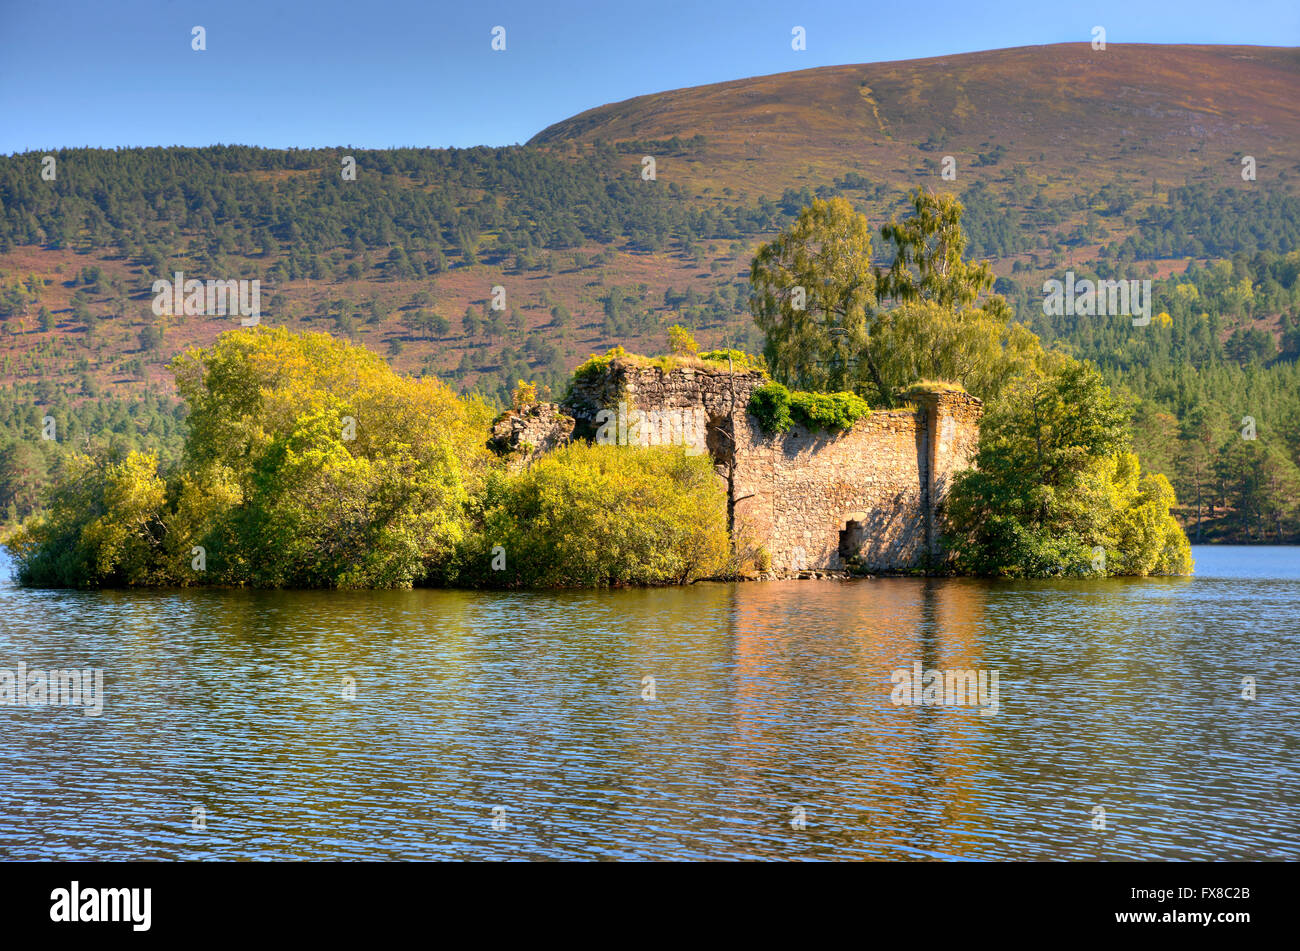 La ruina del castillo ( Lobo de Badenoch) en Loch un Eilein, Rothiemurchus, Cairngorms, Highlands Escocesas. Foto de stock